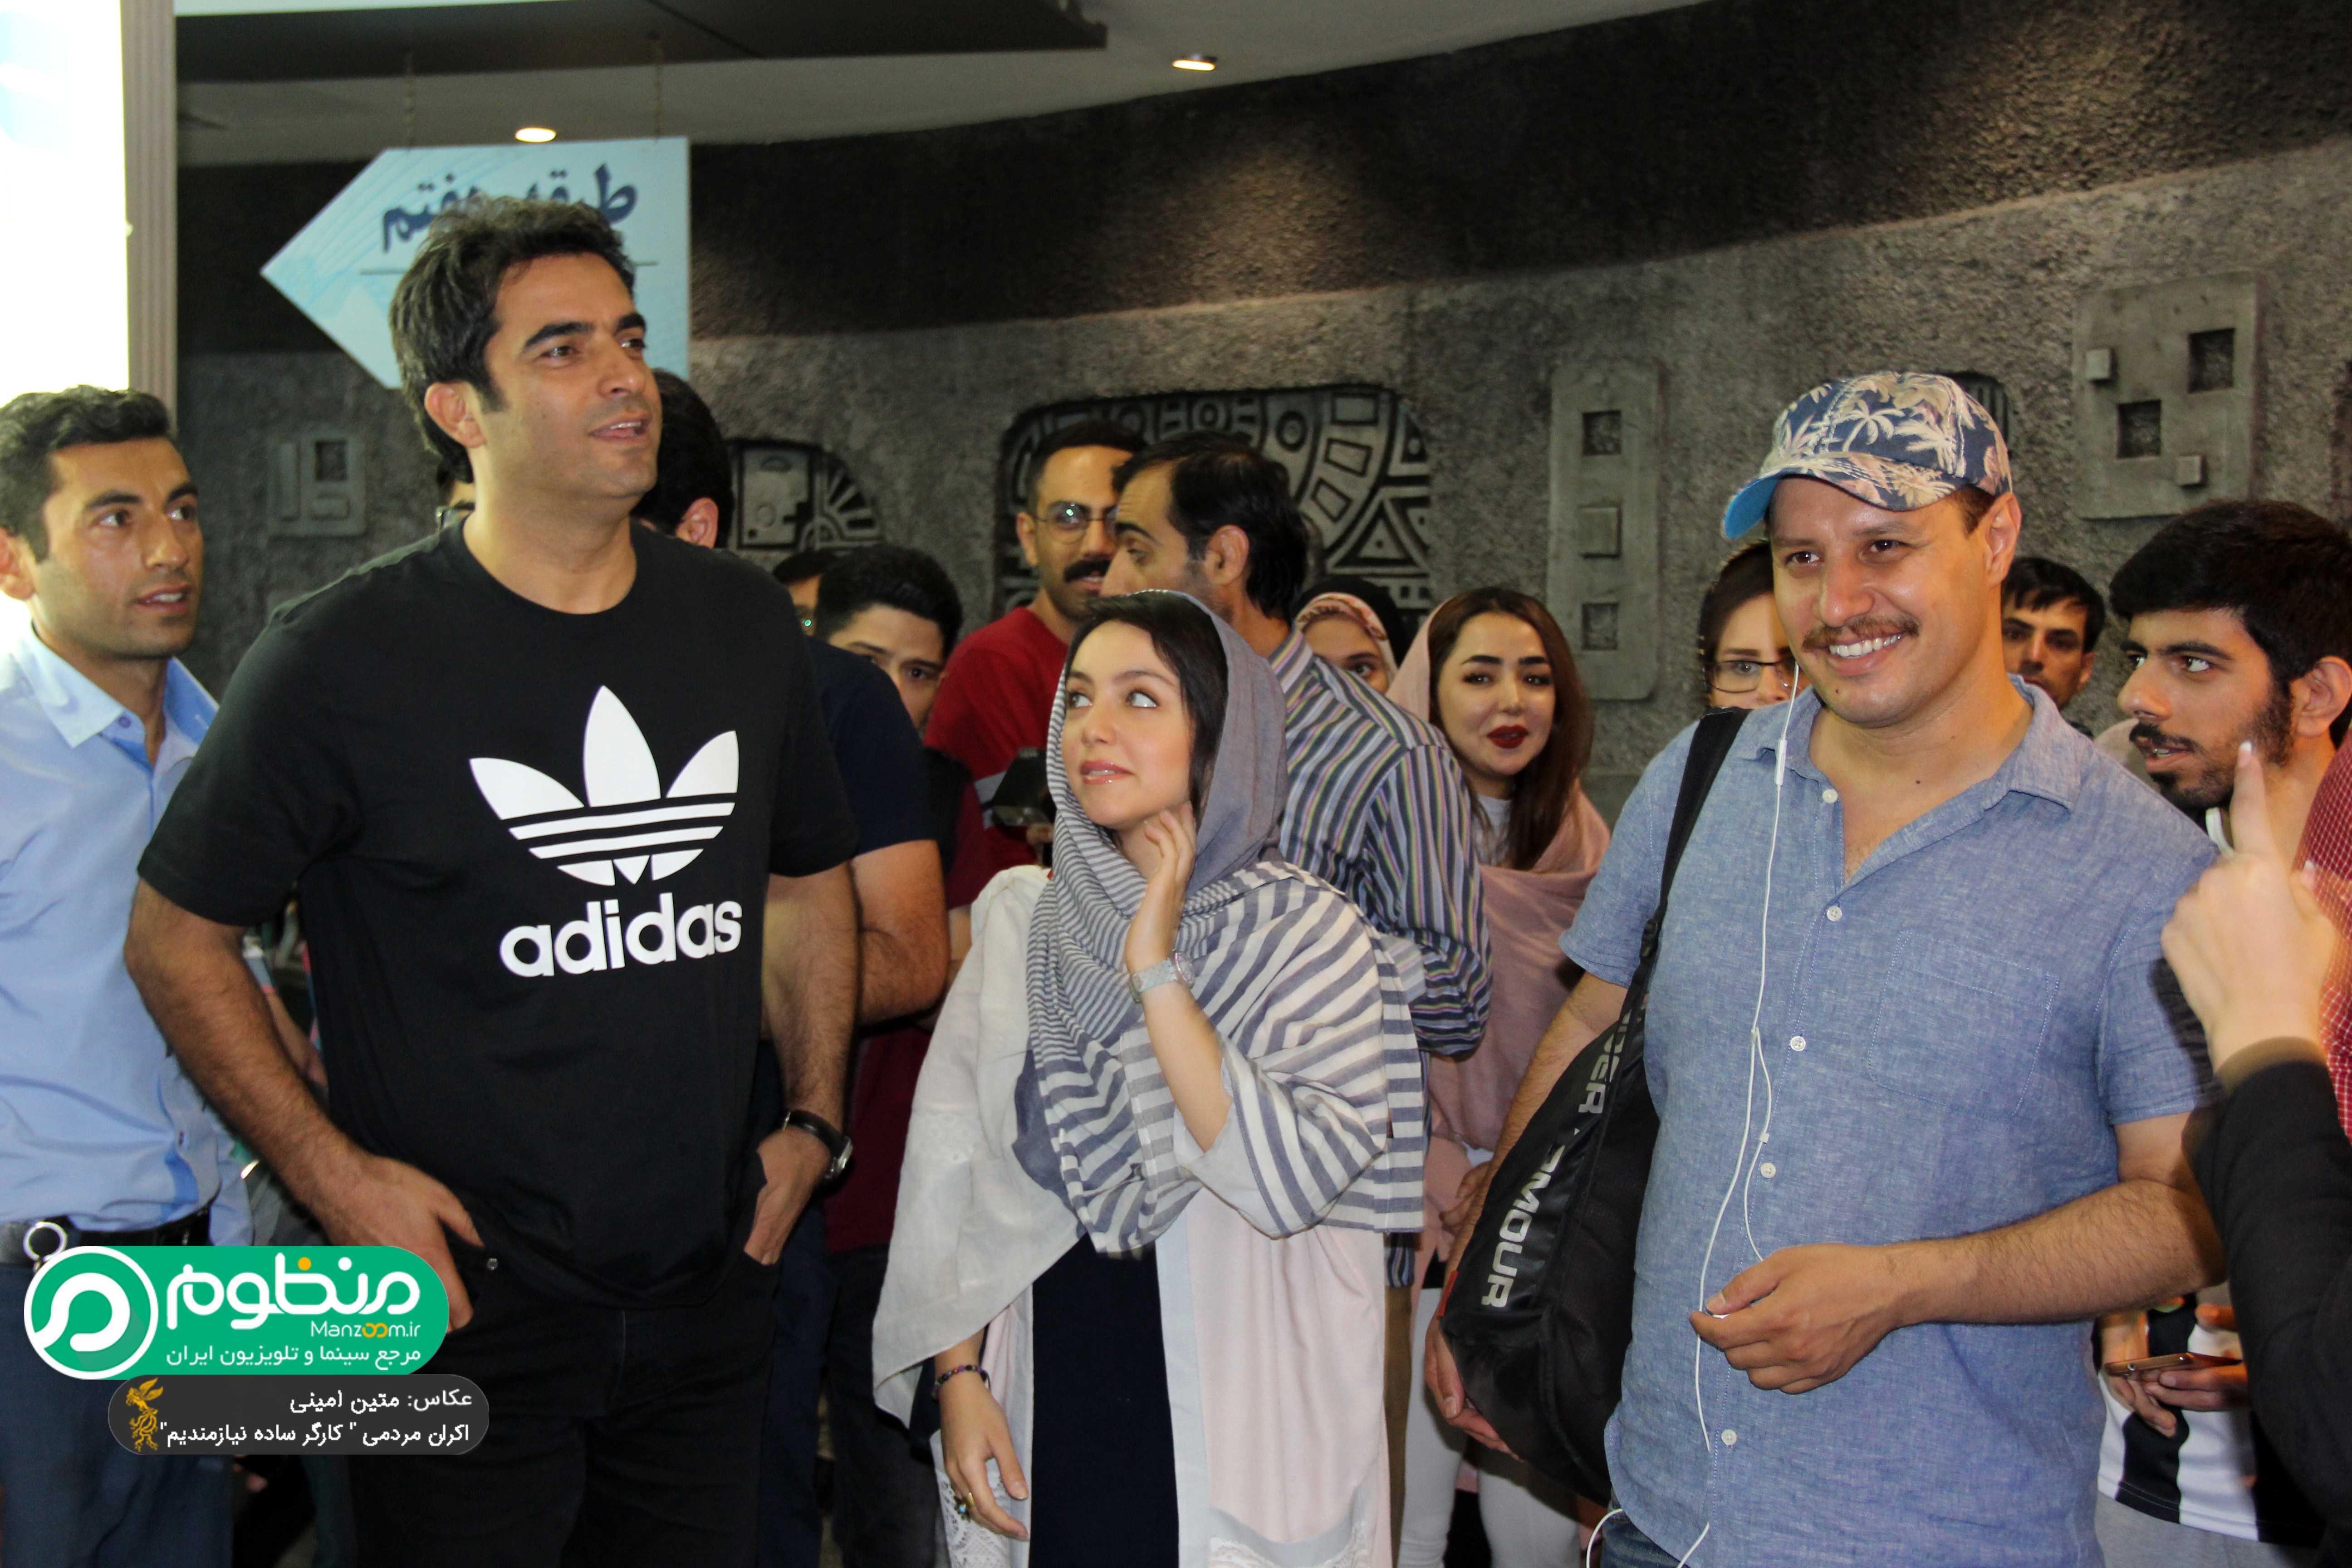 جواد عزتی در اکران افتتاحیه فیلم سینمایی کارگر ساده نیازمندیم به همراه نازنین بیاتی و منوچهر هادی